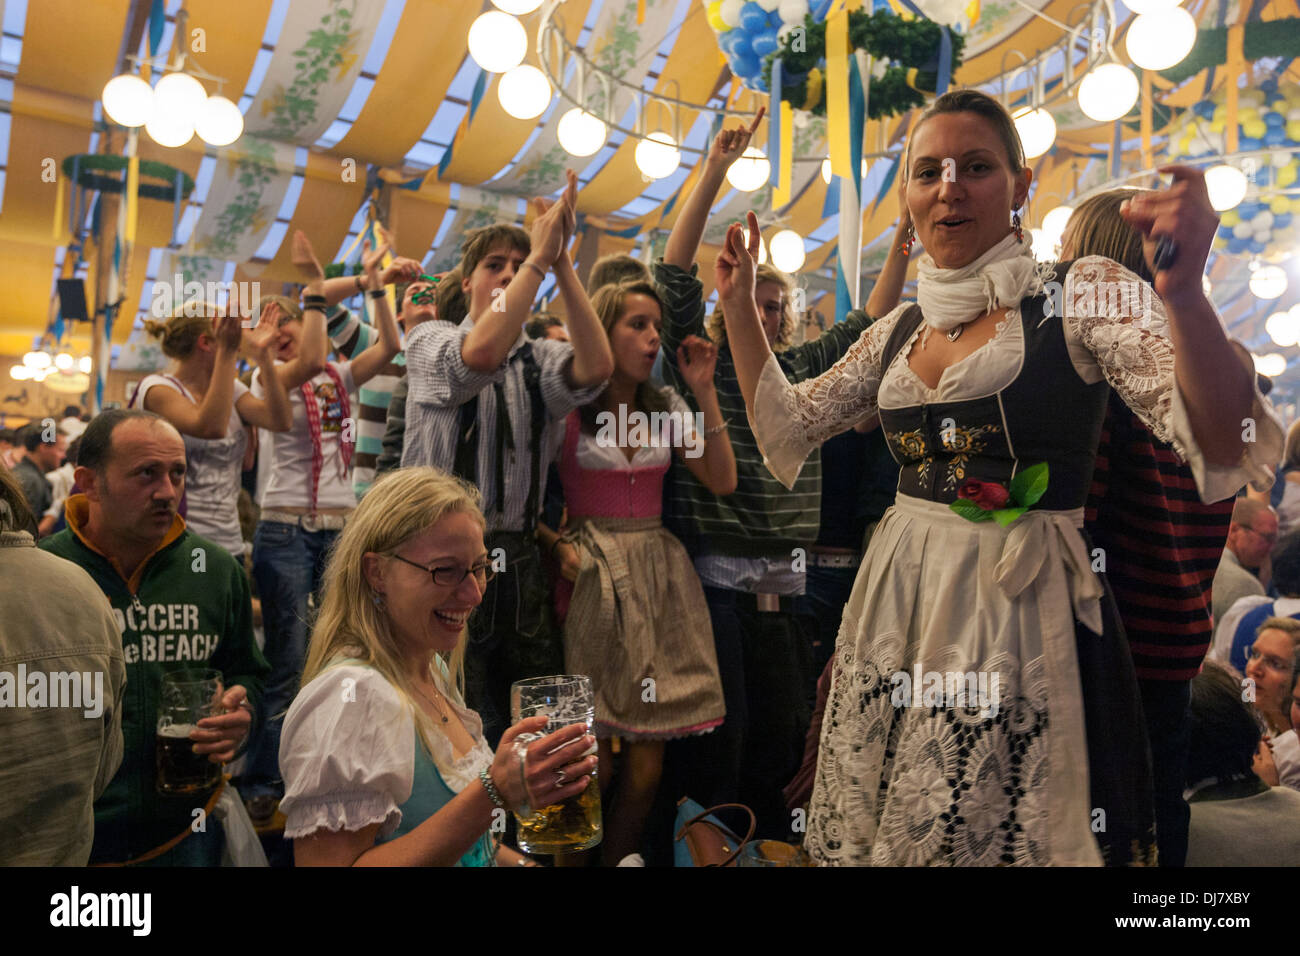 Mädchen tanzen auf Tisch am München größte Bierfest der Welt Stockfotografie Alamy